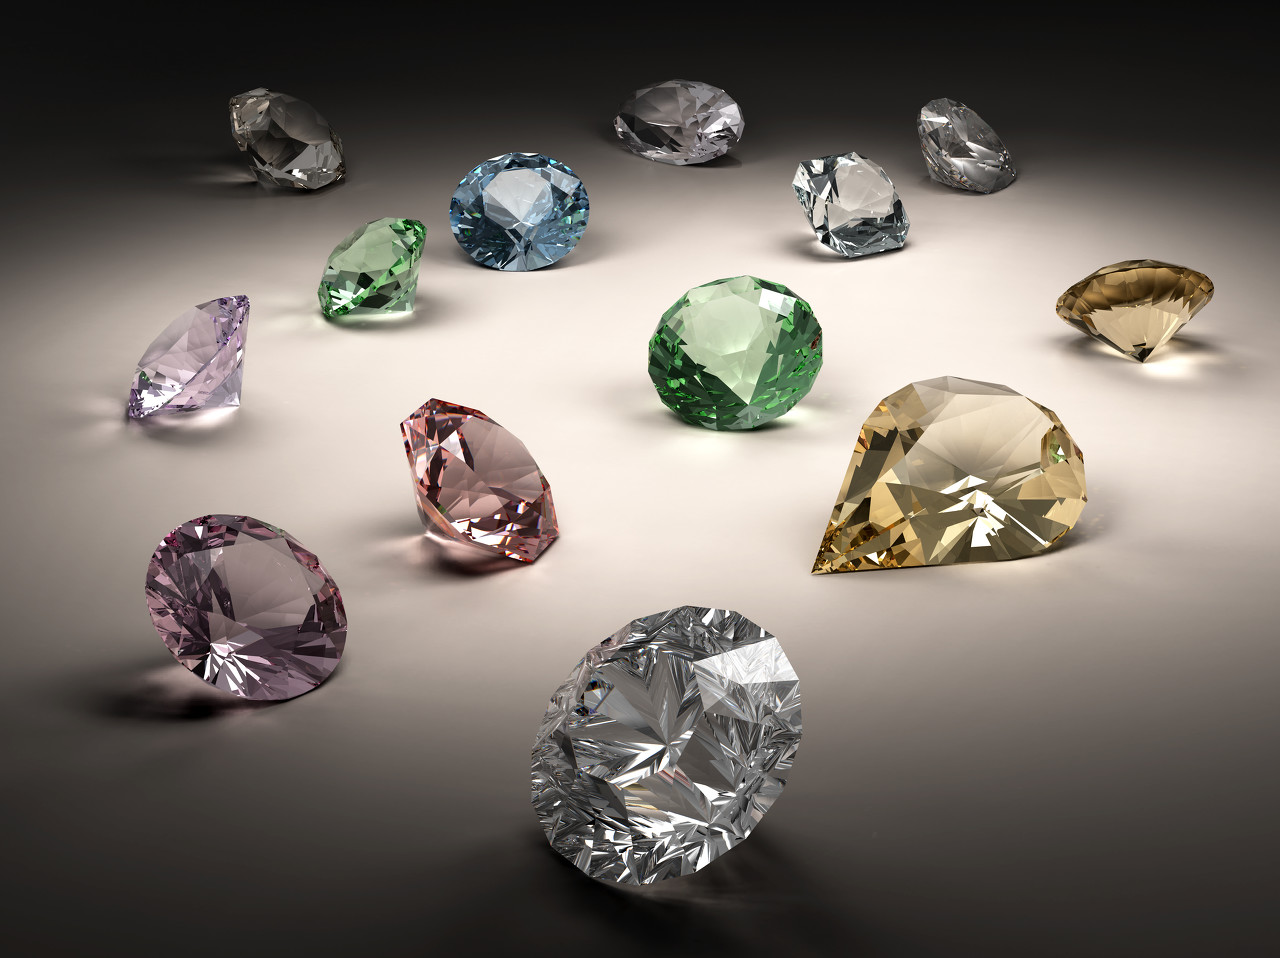 美国花式彩色钻石供应商LJ West Diamonds澳大利亚办事处开业